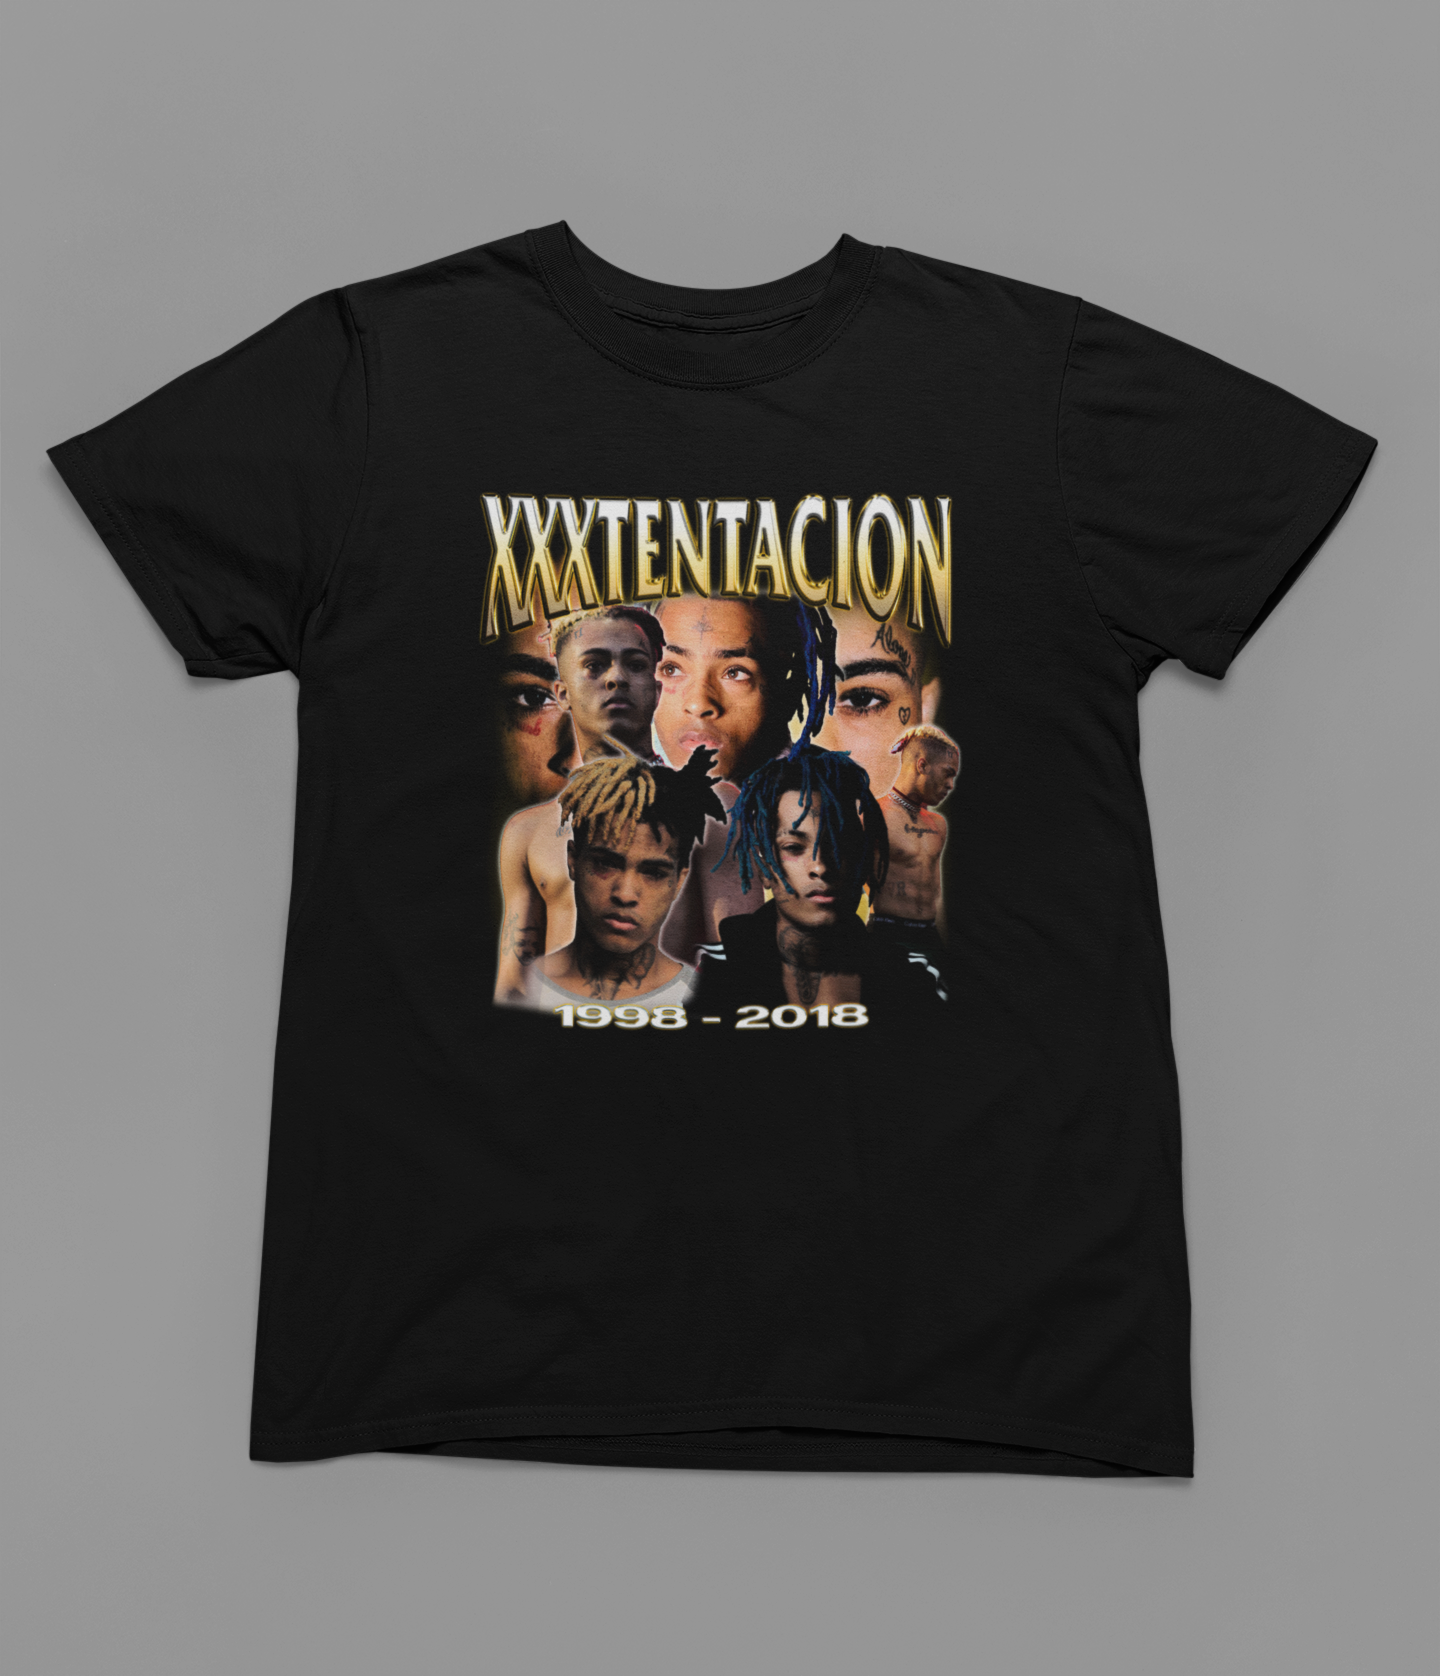 XXXTentacion Music T-Shirt